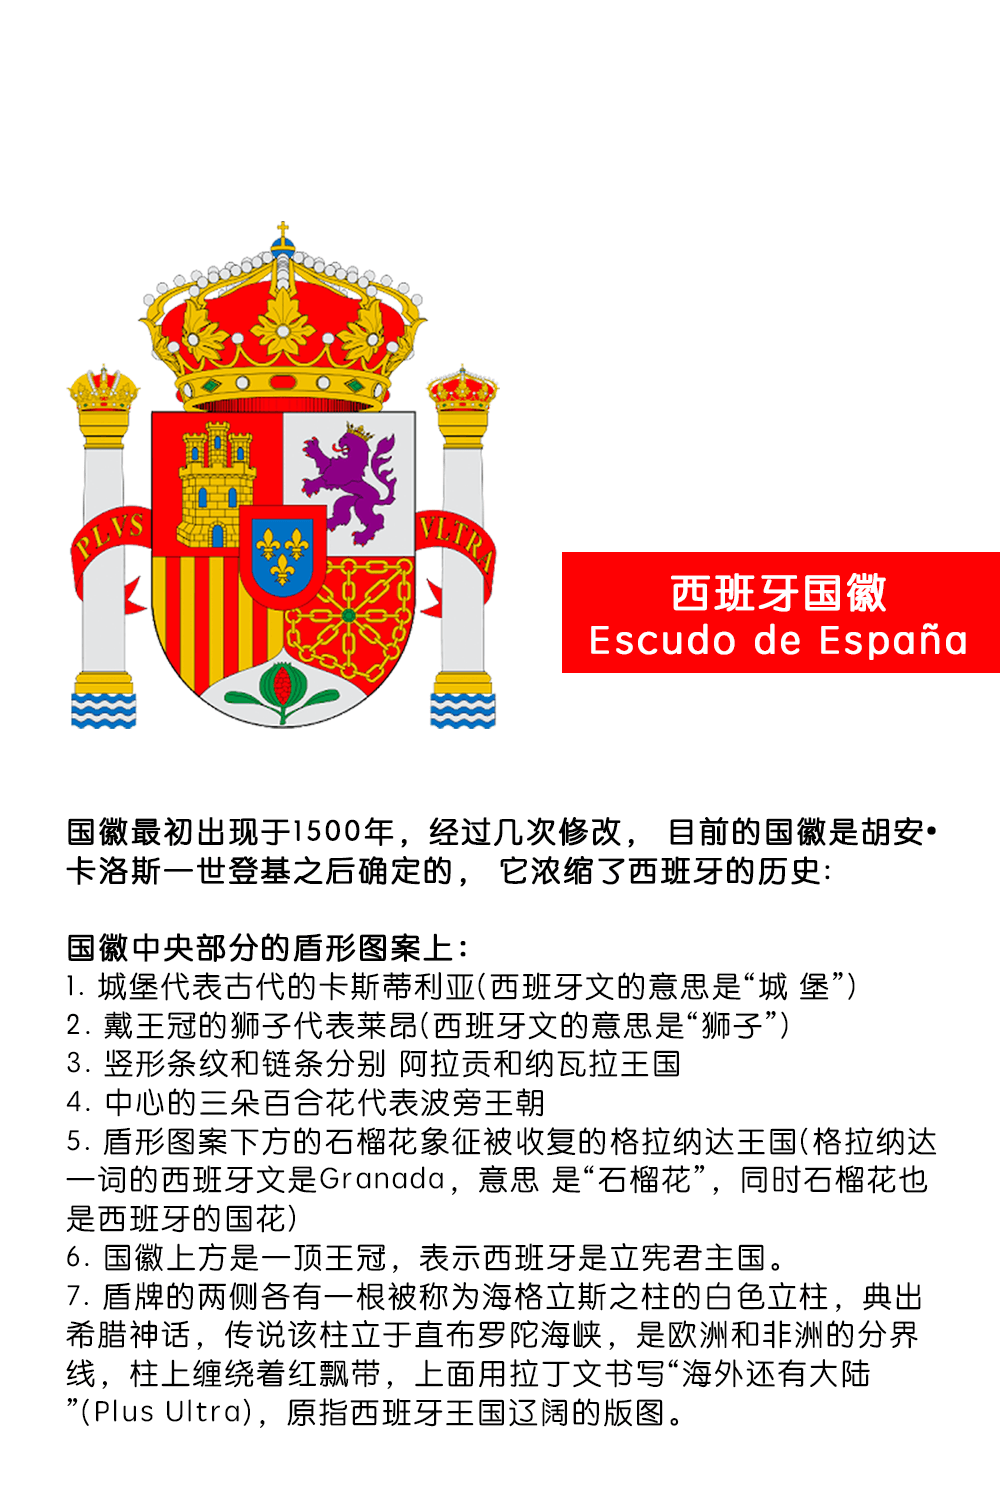 西班牙国徽中元素及意义 I 政府机构徽标(图1)